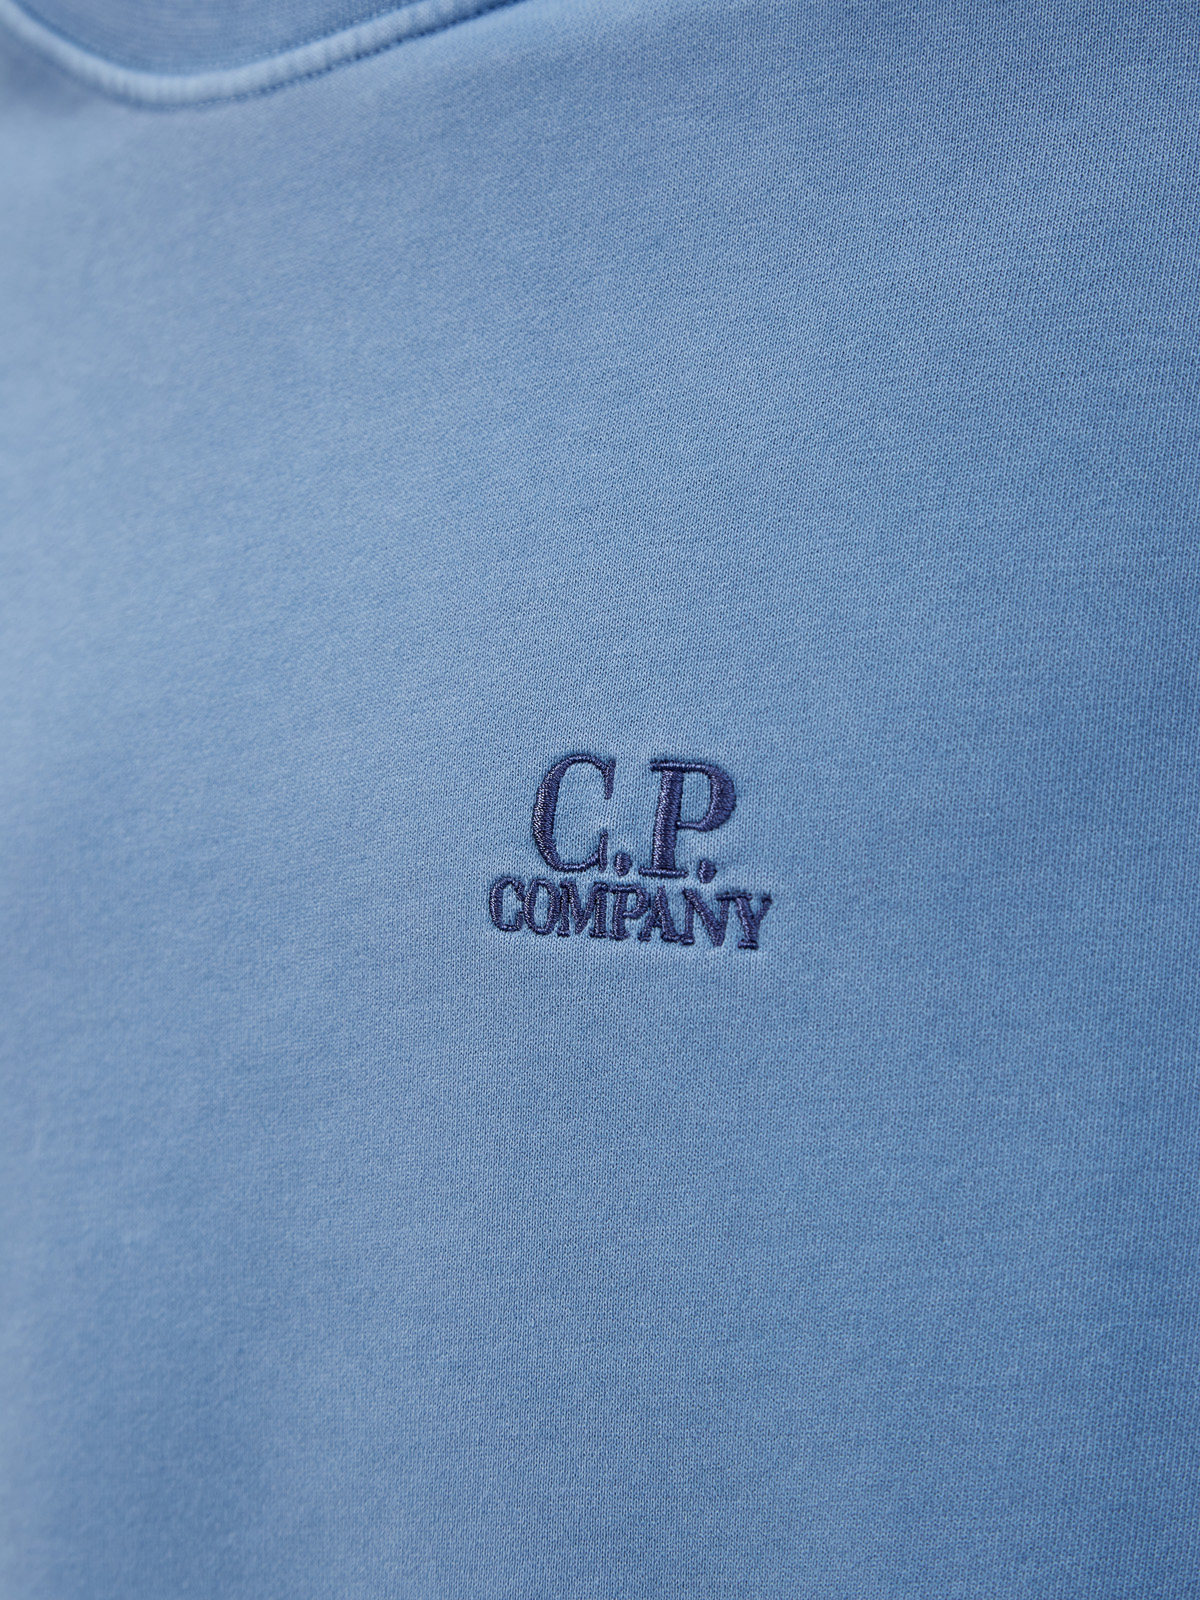 Свитшот из окрашенного вручную хлопка с вышитым логотипом C.P.COMPANY, цвет голубой, размер M;L;XL;2XL - фото 5